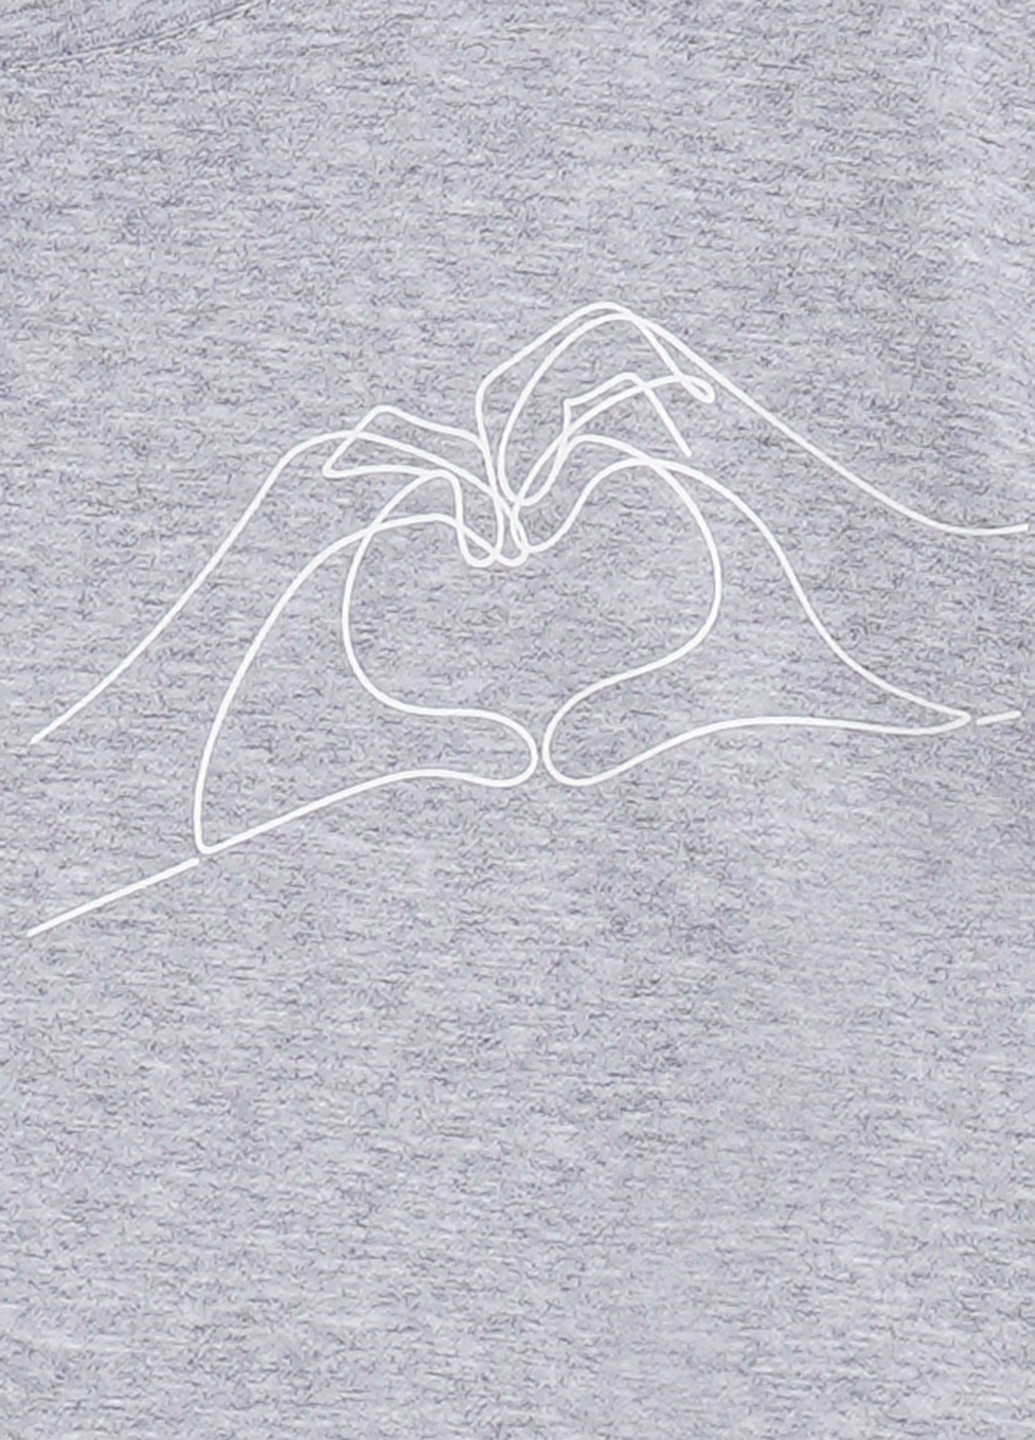 Сіра літня футболка базова з підворотом, руки та серце KASTA design